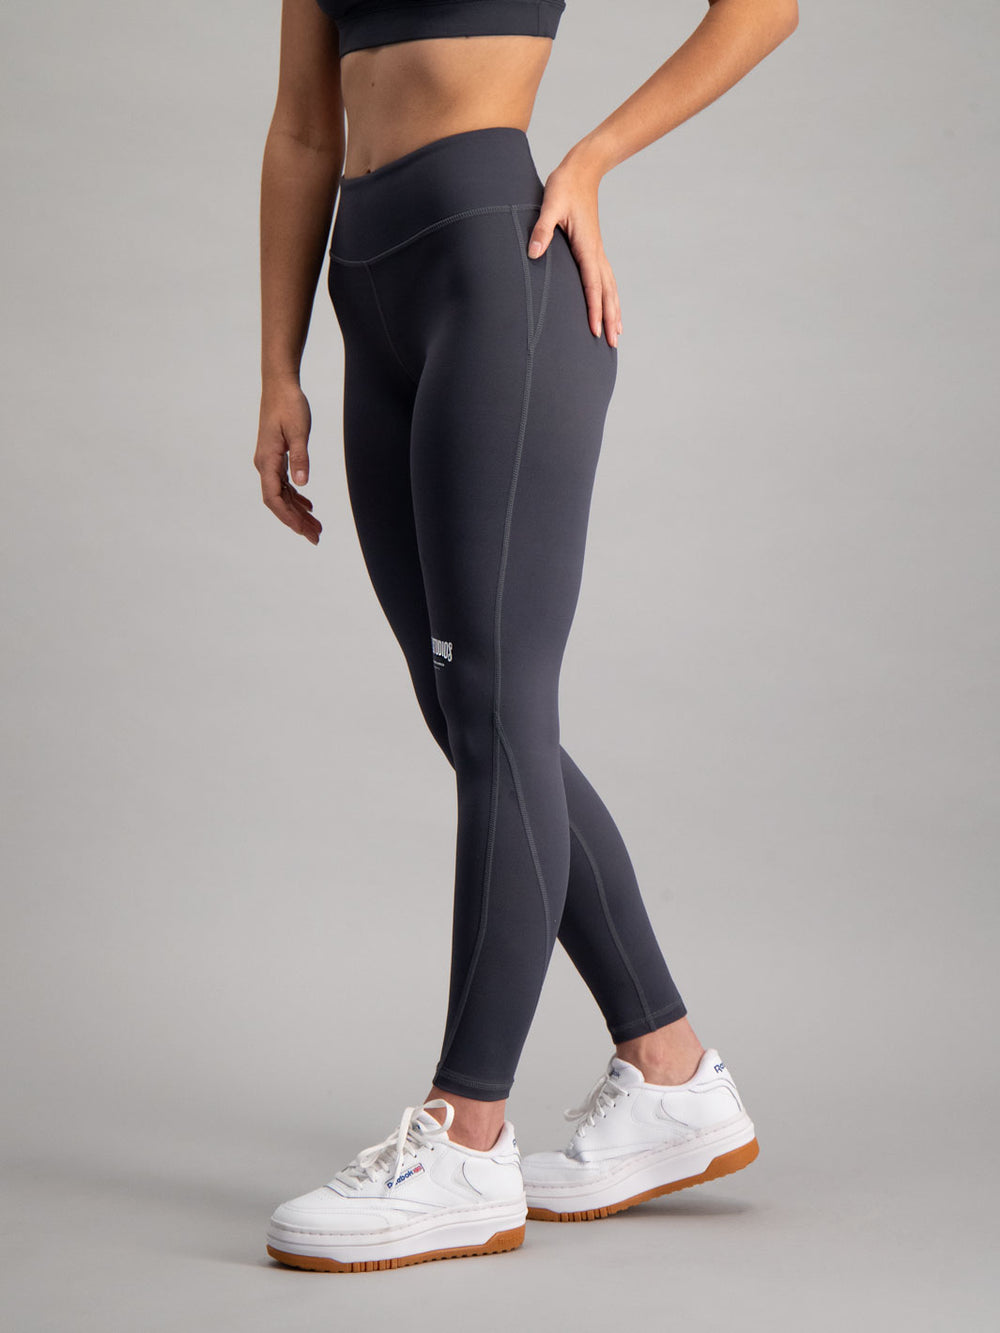 Women's Nike Air High-Rise Full Length Tight Leggings M Burnt